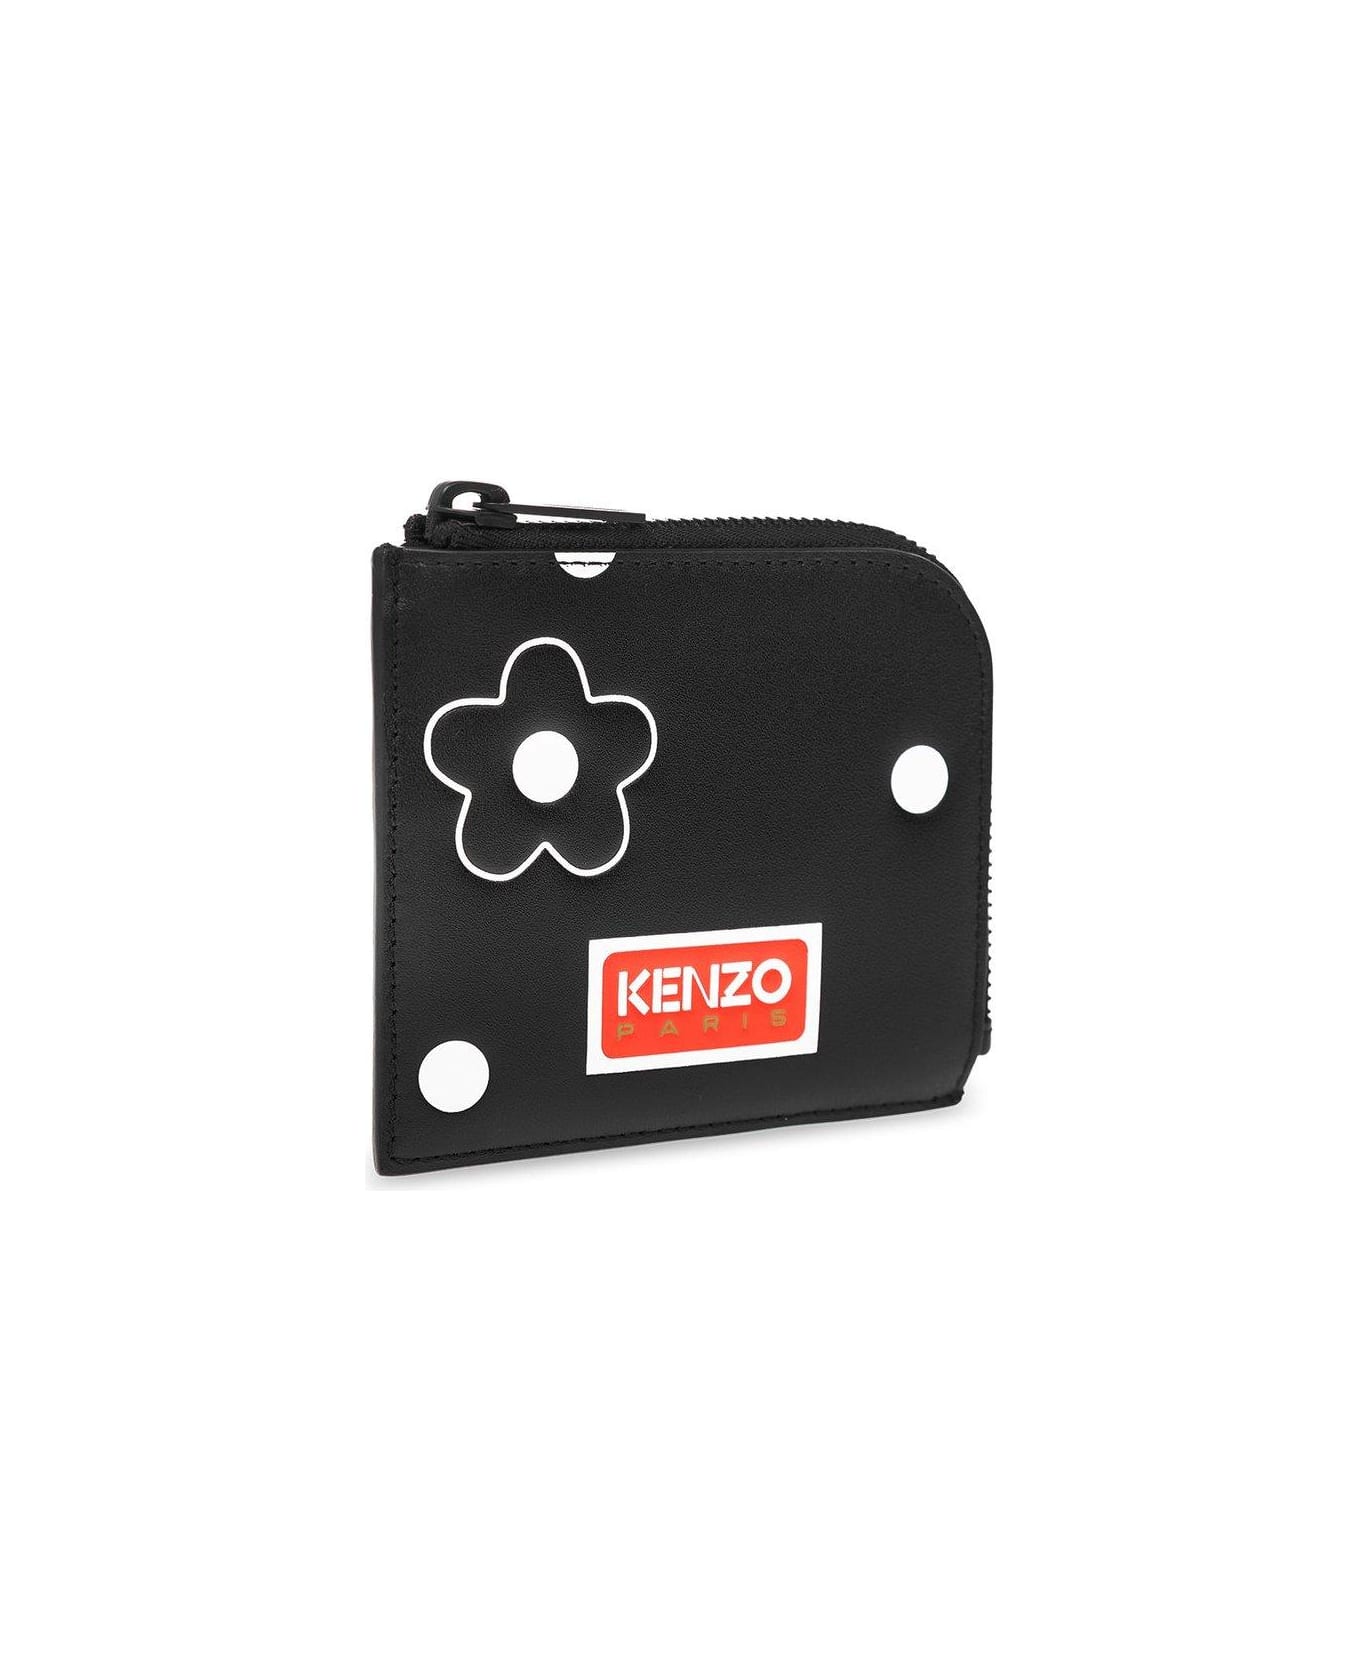 Kenzo Logo Patch Zipped Wallet - Black 財布